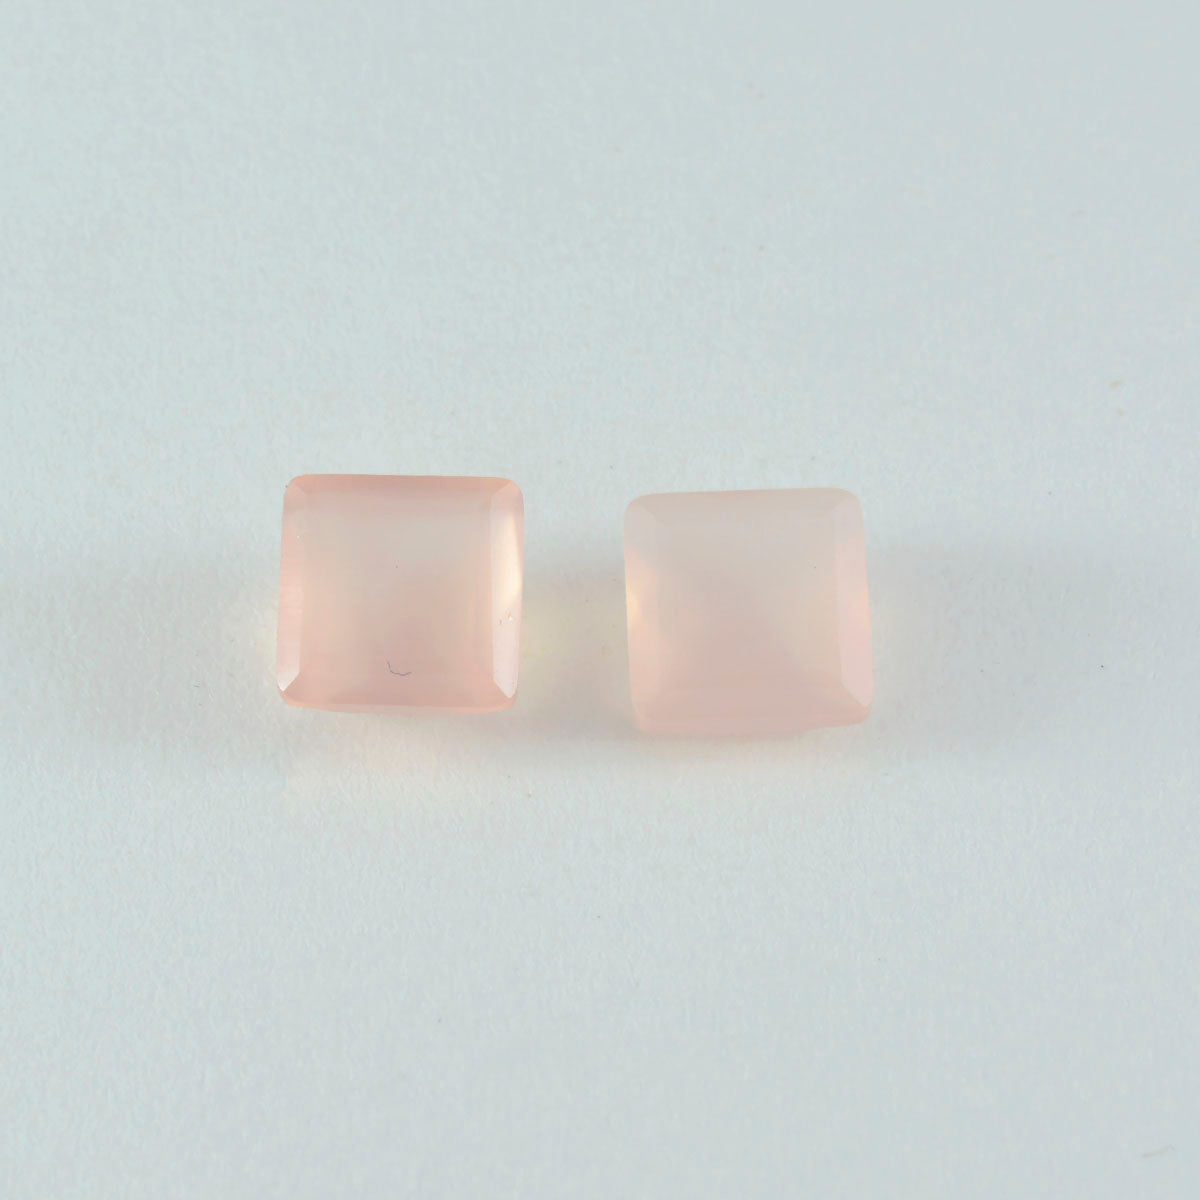 riyogems 1 шт. розовый кварц ограненный 13x13 мм квадратной формы превосходное качество свободный драгоценный камень